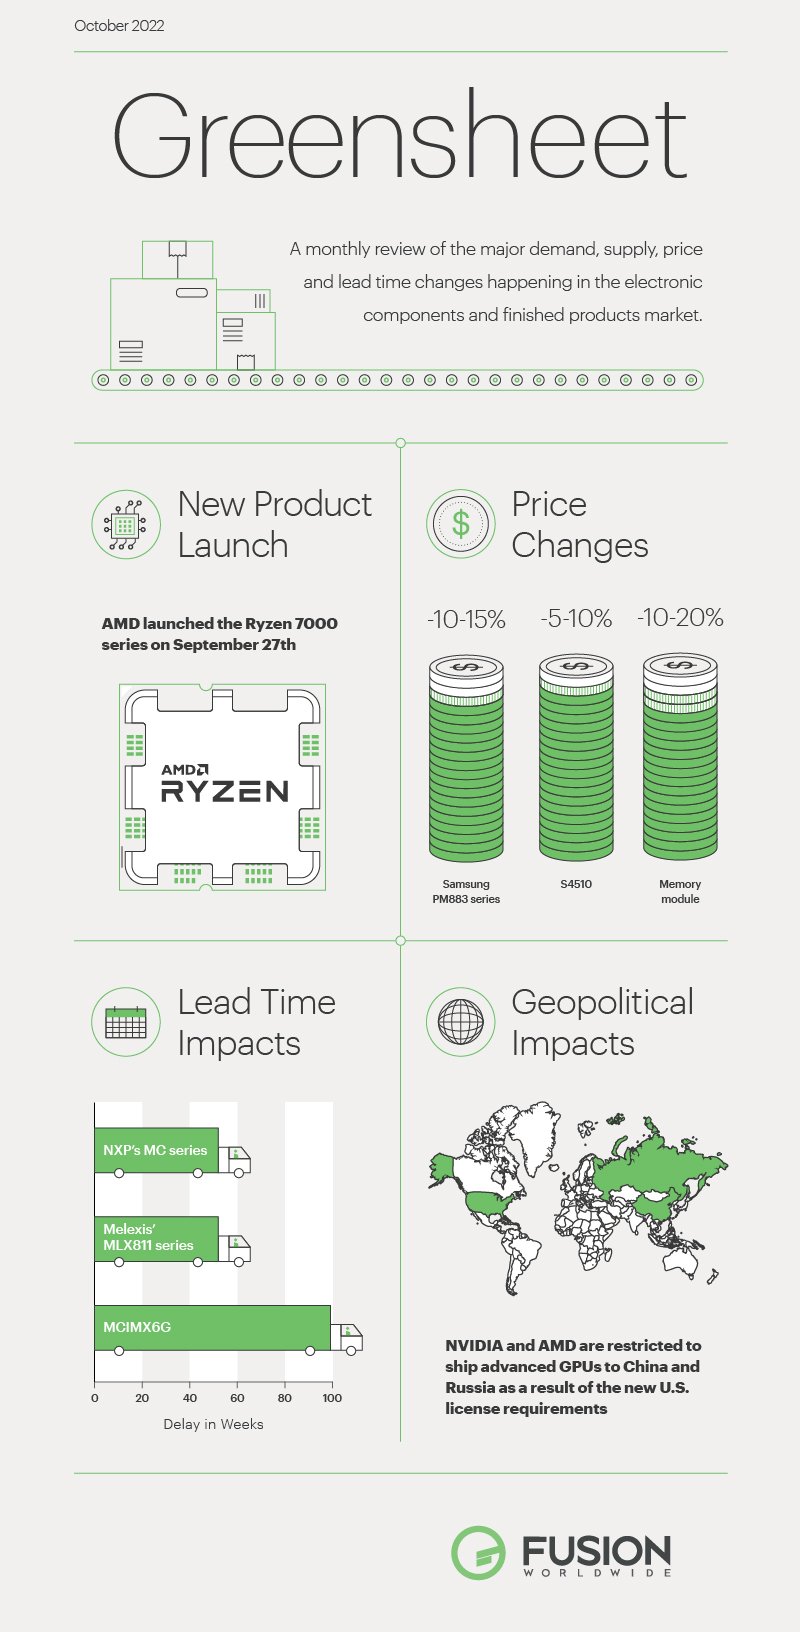 greensheet infographic-oct 2022-01 (2)